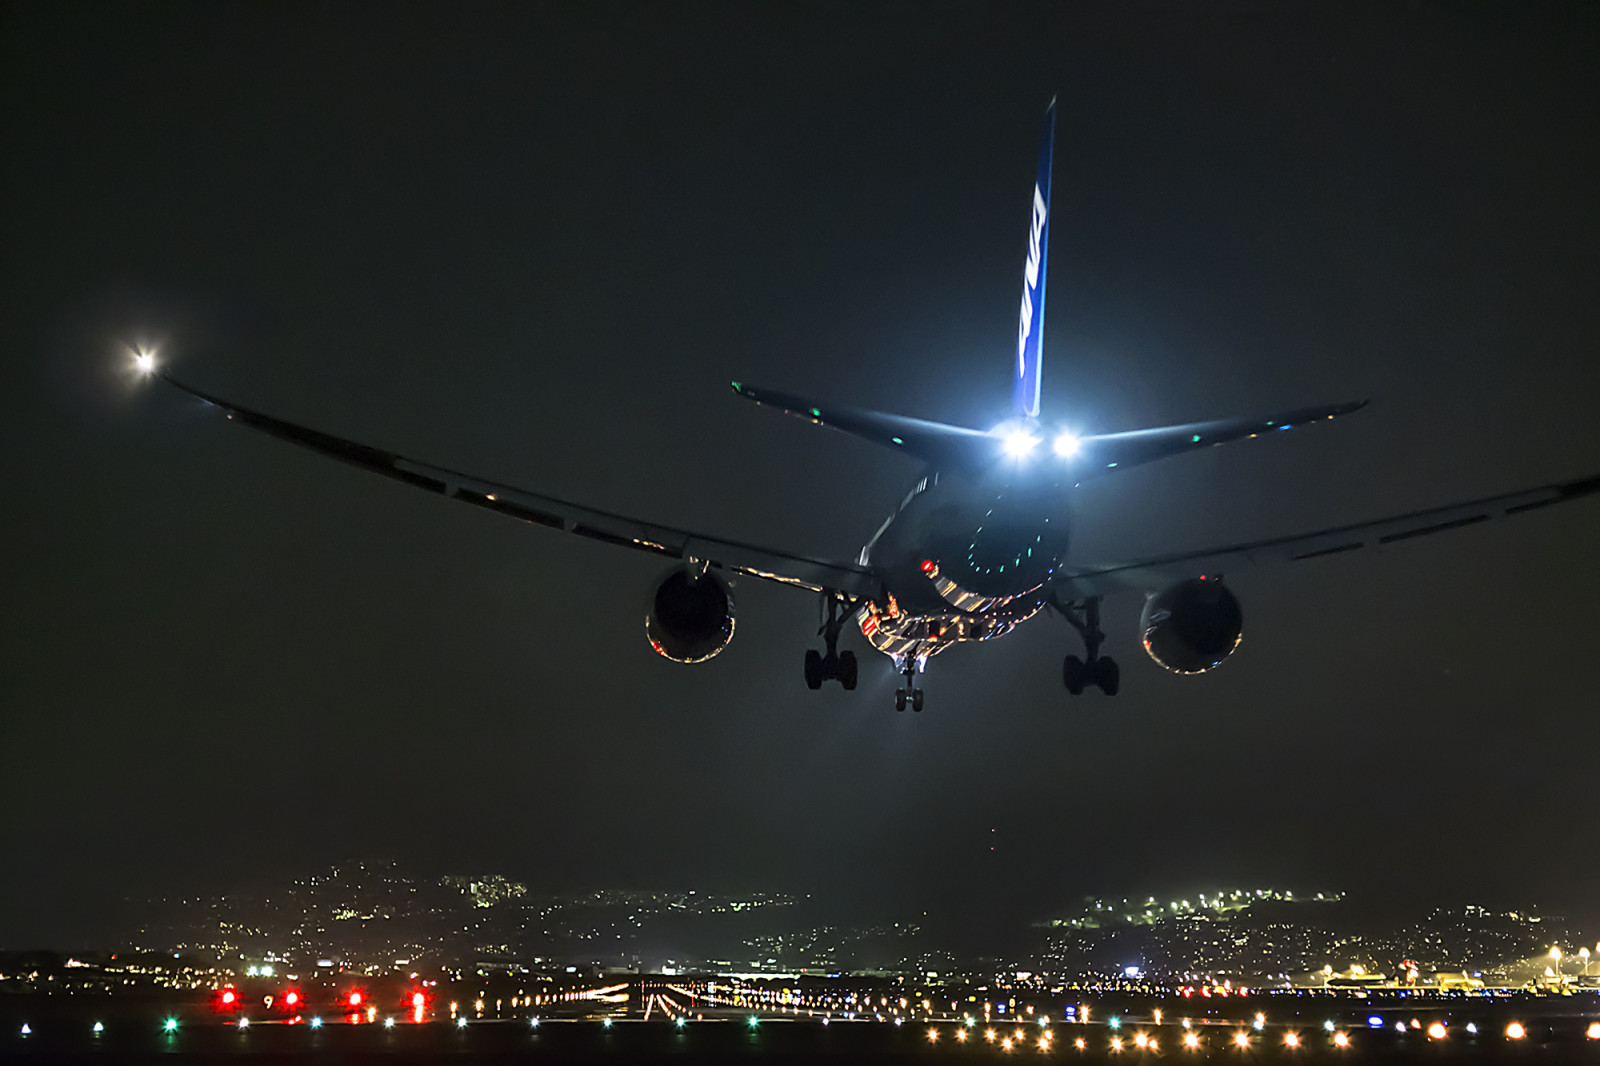 กลางคืน, ประเทศญี่ปุ่น, เครื่องบิน, โอซาก้า, โบอิ้ง 747, สนามบิน